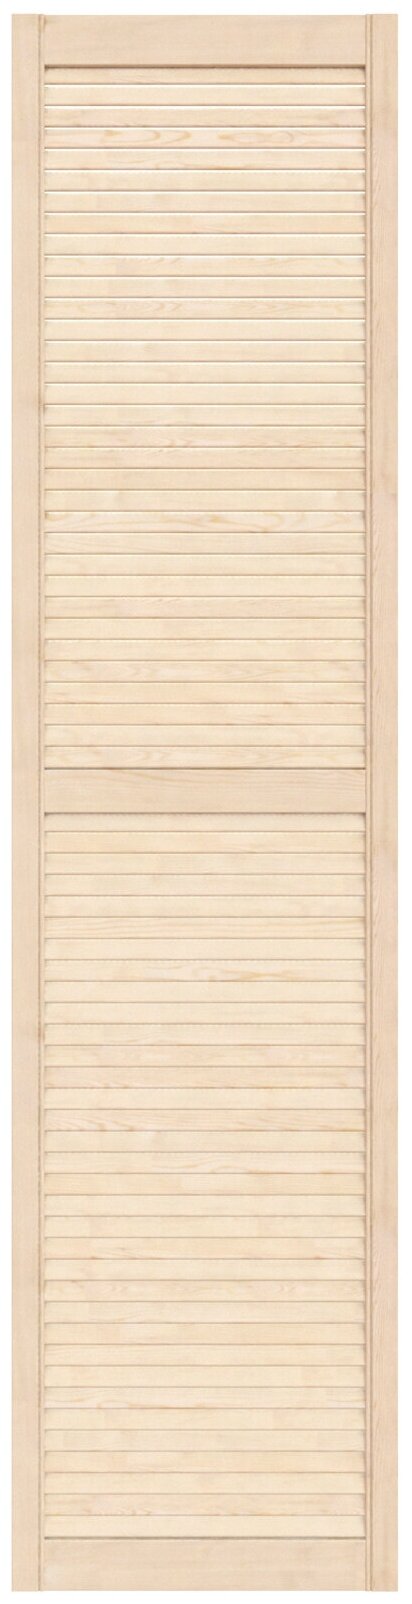 Дверь жалюзийная деревянная 494х2013мм сосна сорт Экстра / Дверца жалюзи / Створка для ширмы